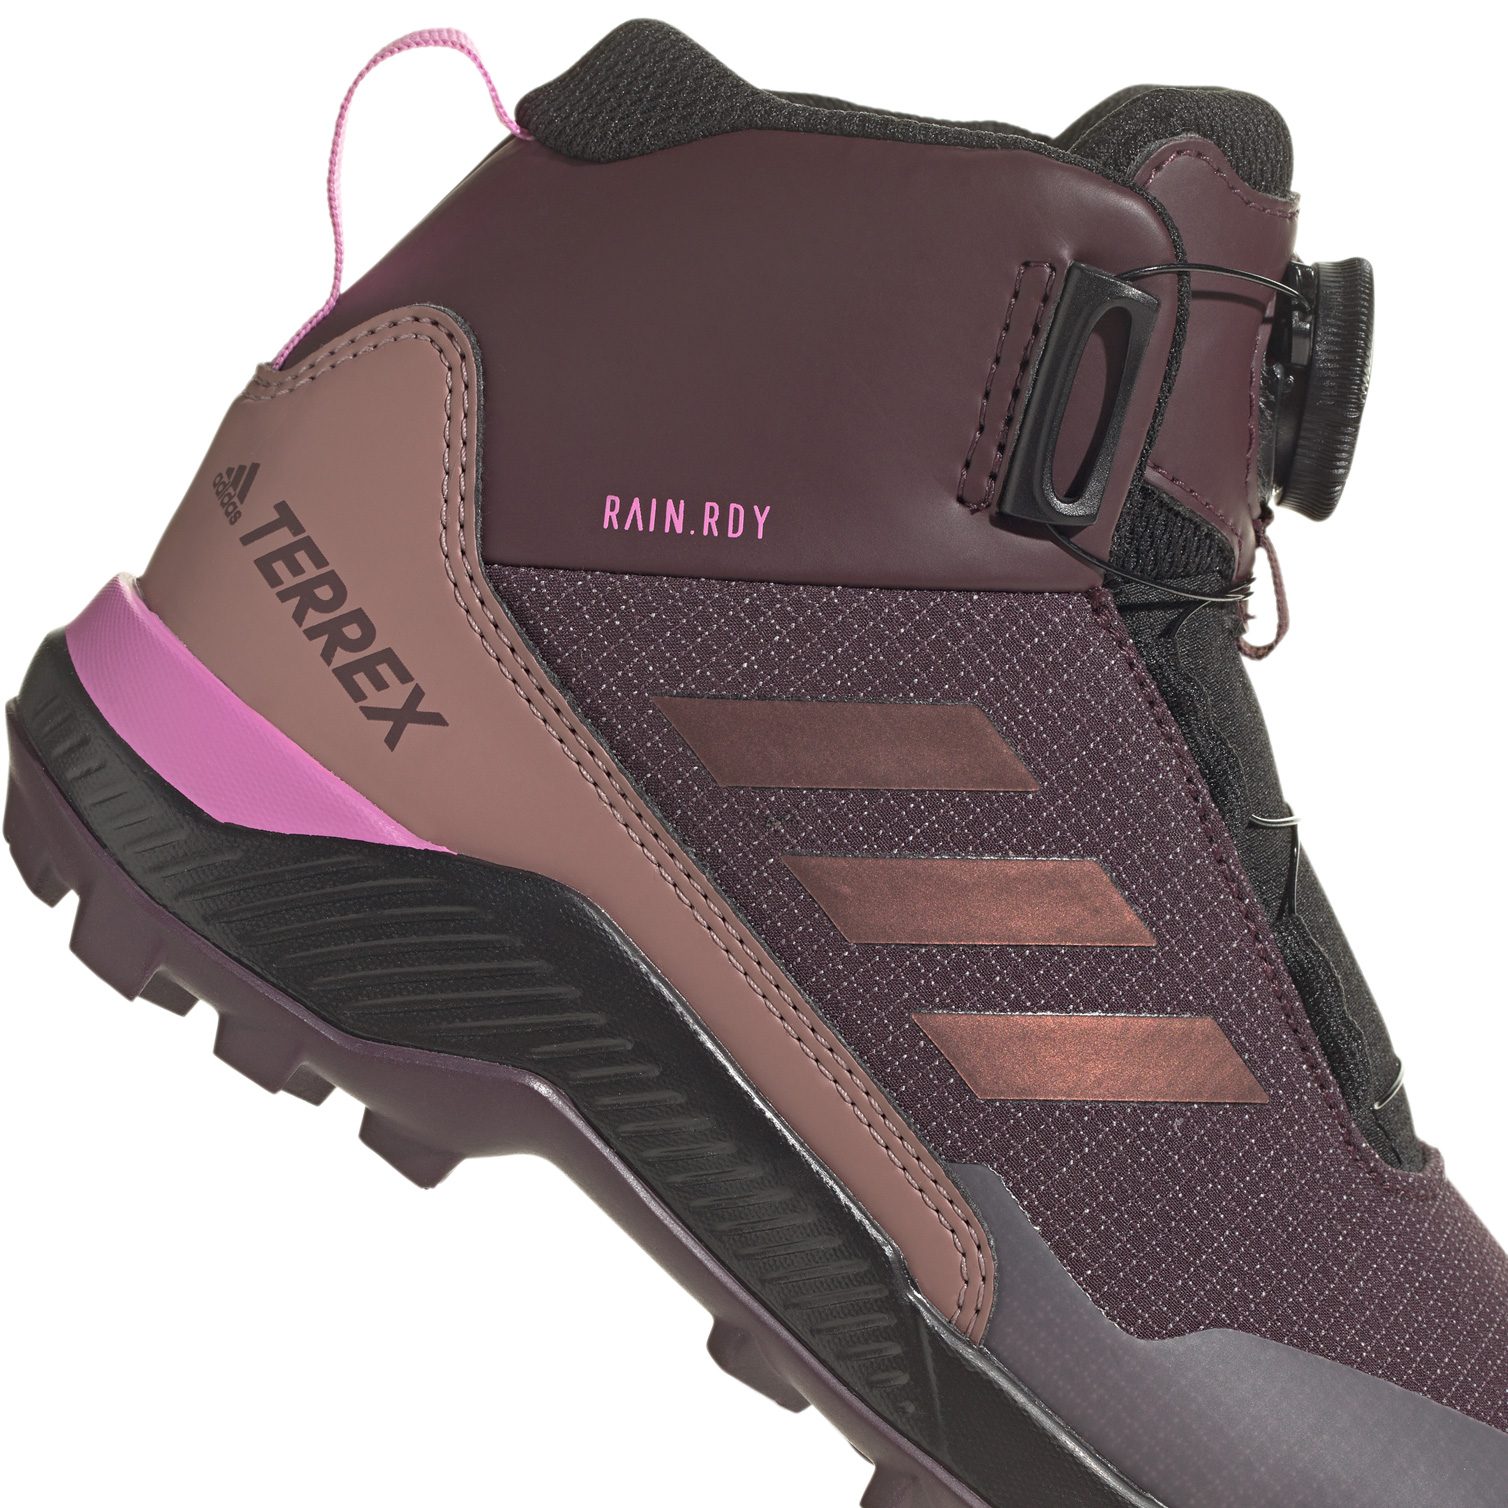 Bittl Sport Shop shadow - Mid Shoes Terrex Boa Rain.RDY adidas at Kids Hiking TERREX maroon